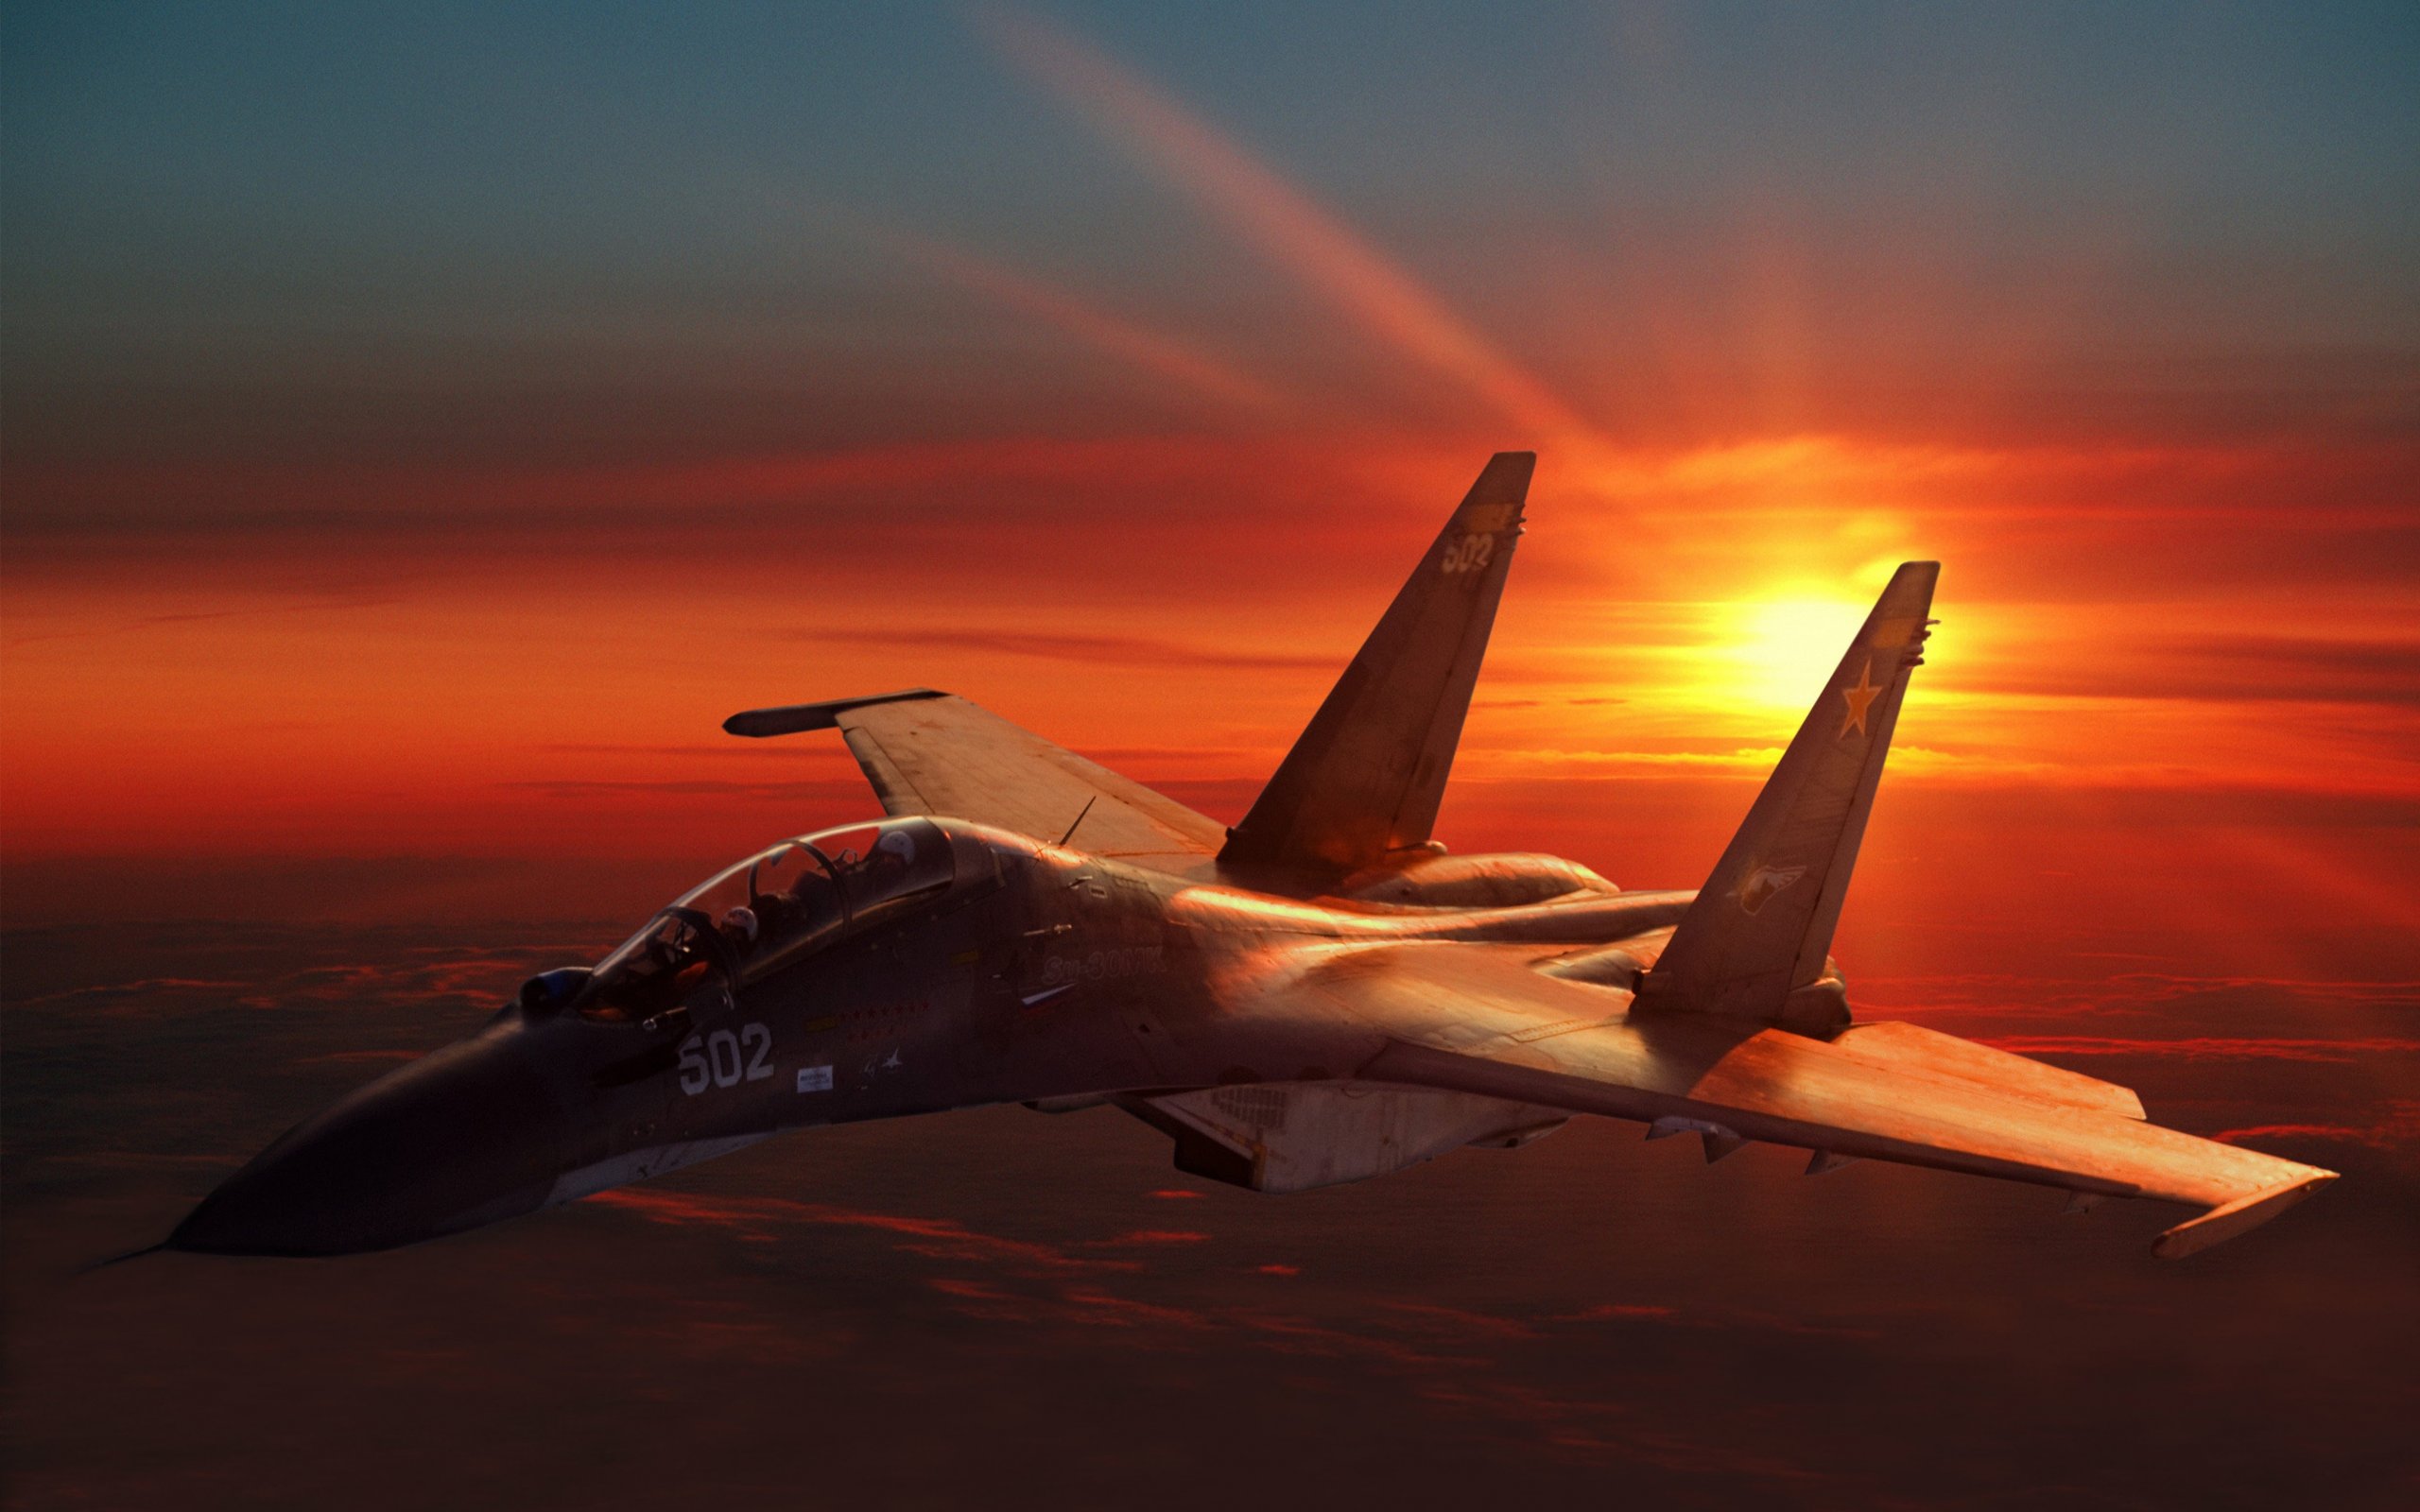 SU 30 Fighter Jet Wallpaper Download For Desktop amp Mobile